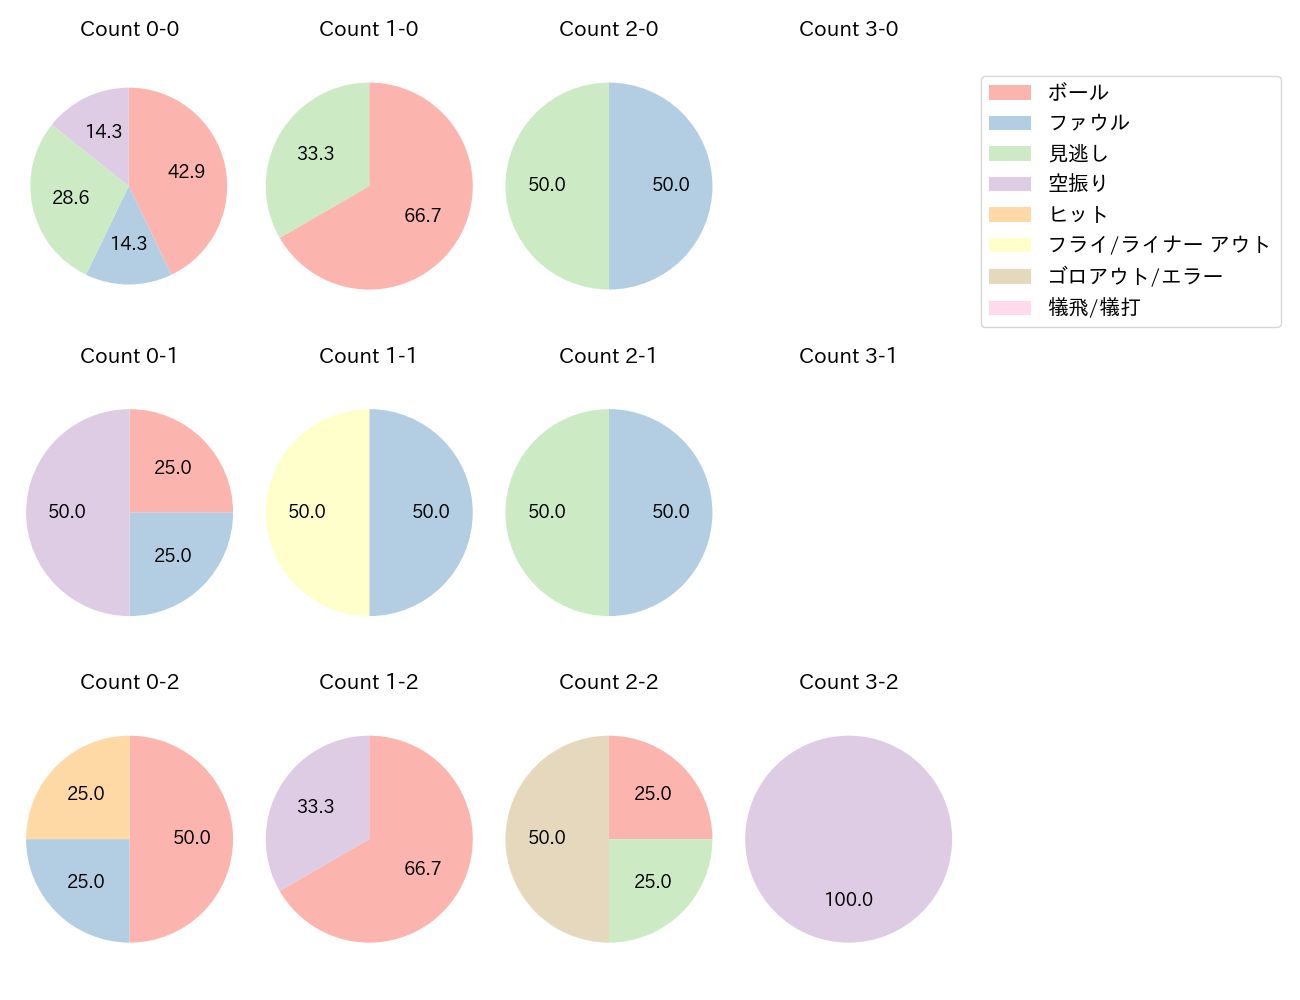 小野寺 暖の球数分布(2021年6月)